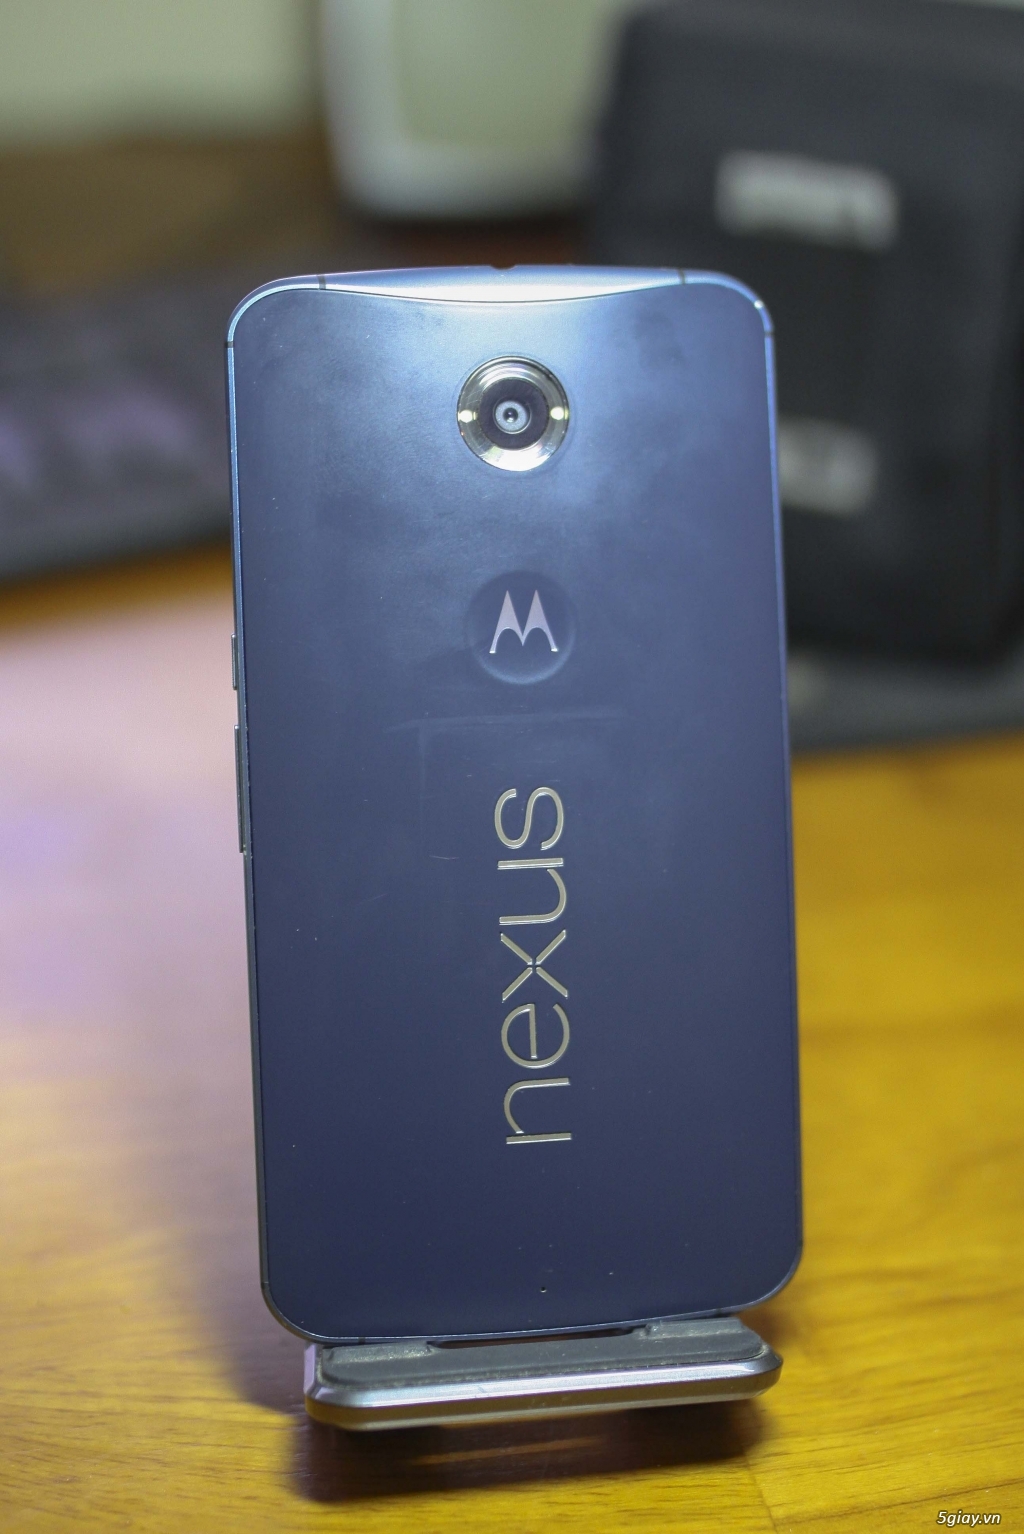 Thanh lý Google Nexus 6 hàng cực độc 32GB|3GB|Snap 805|Màn 2k - 1